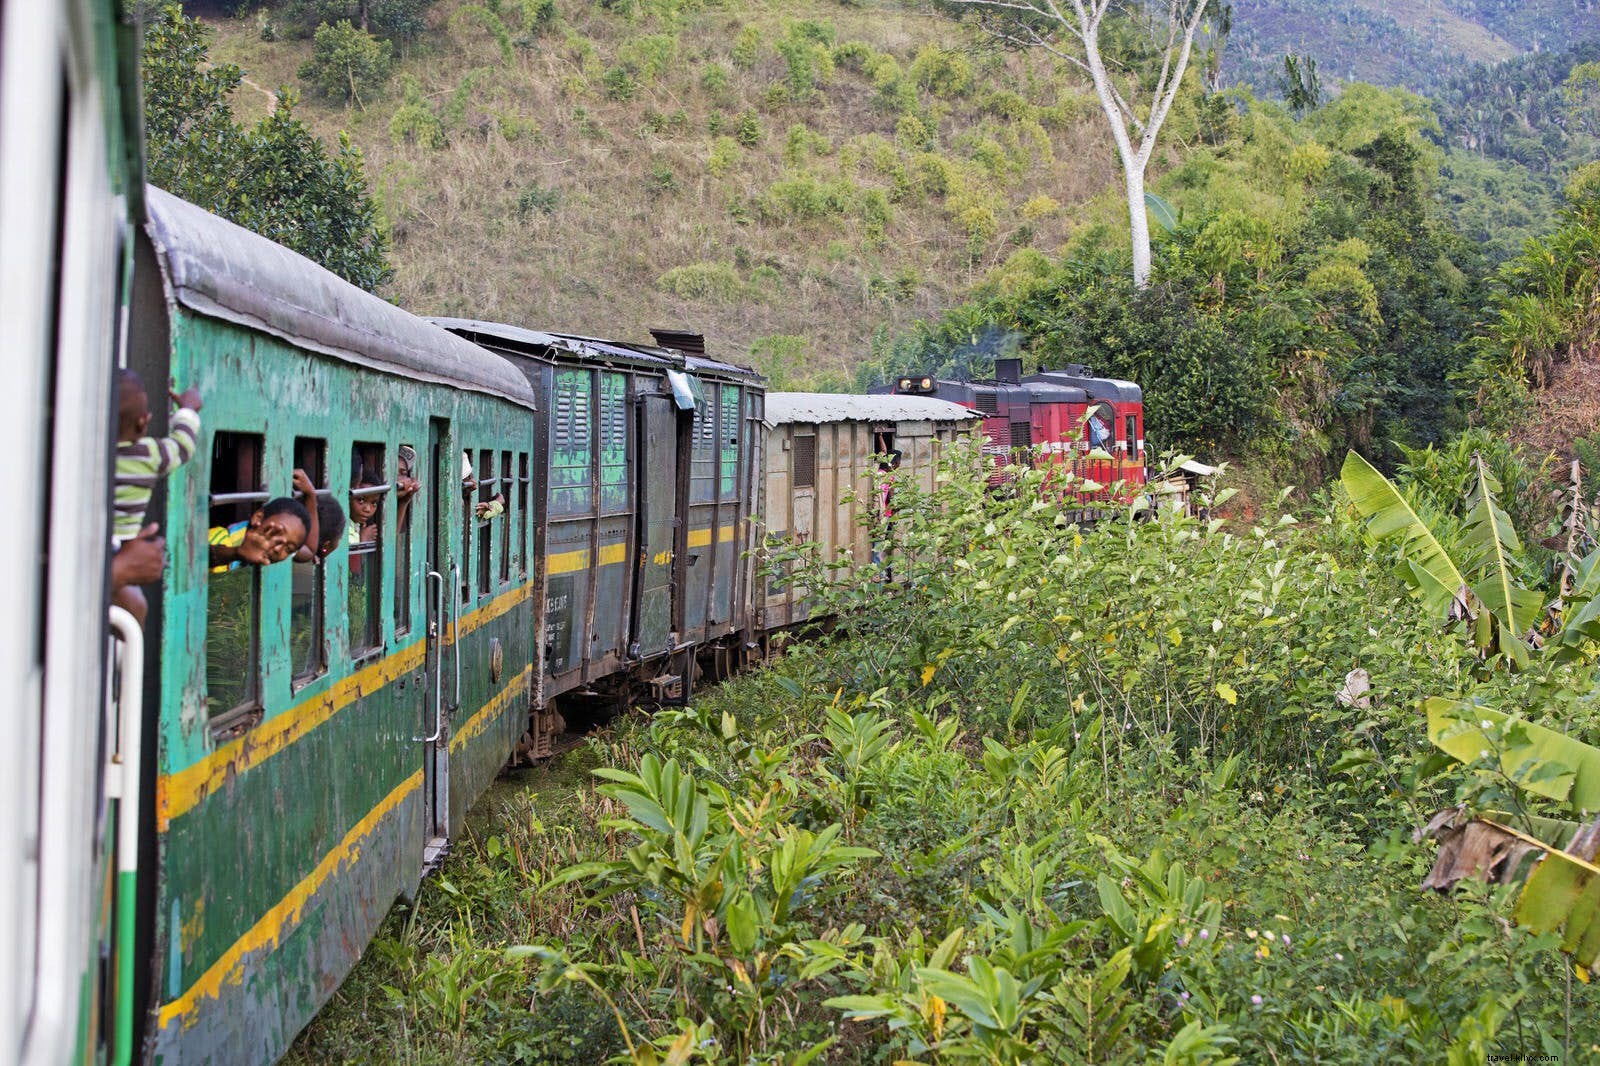 Viajando no trem lento de Madagascar 